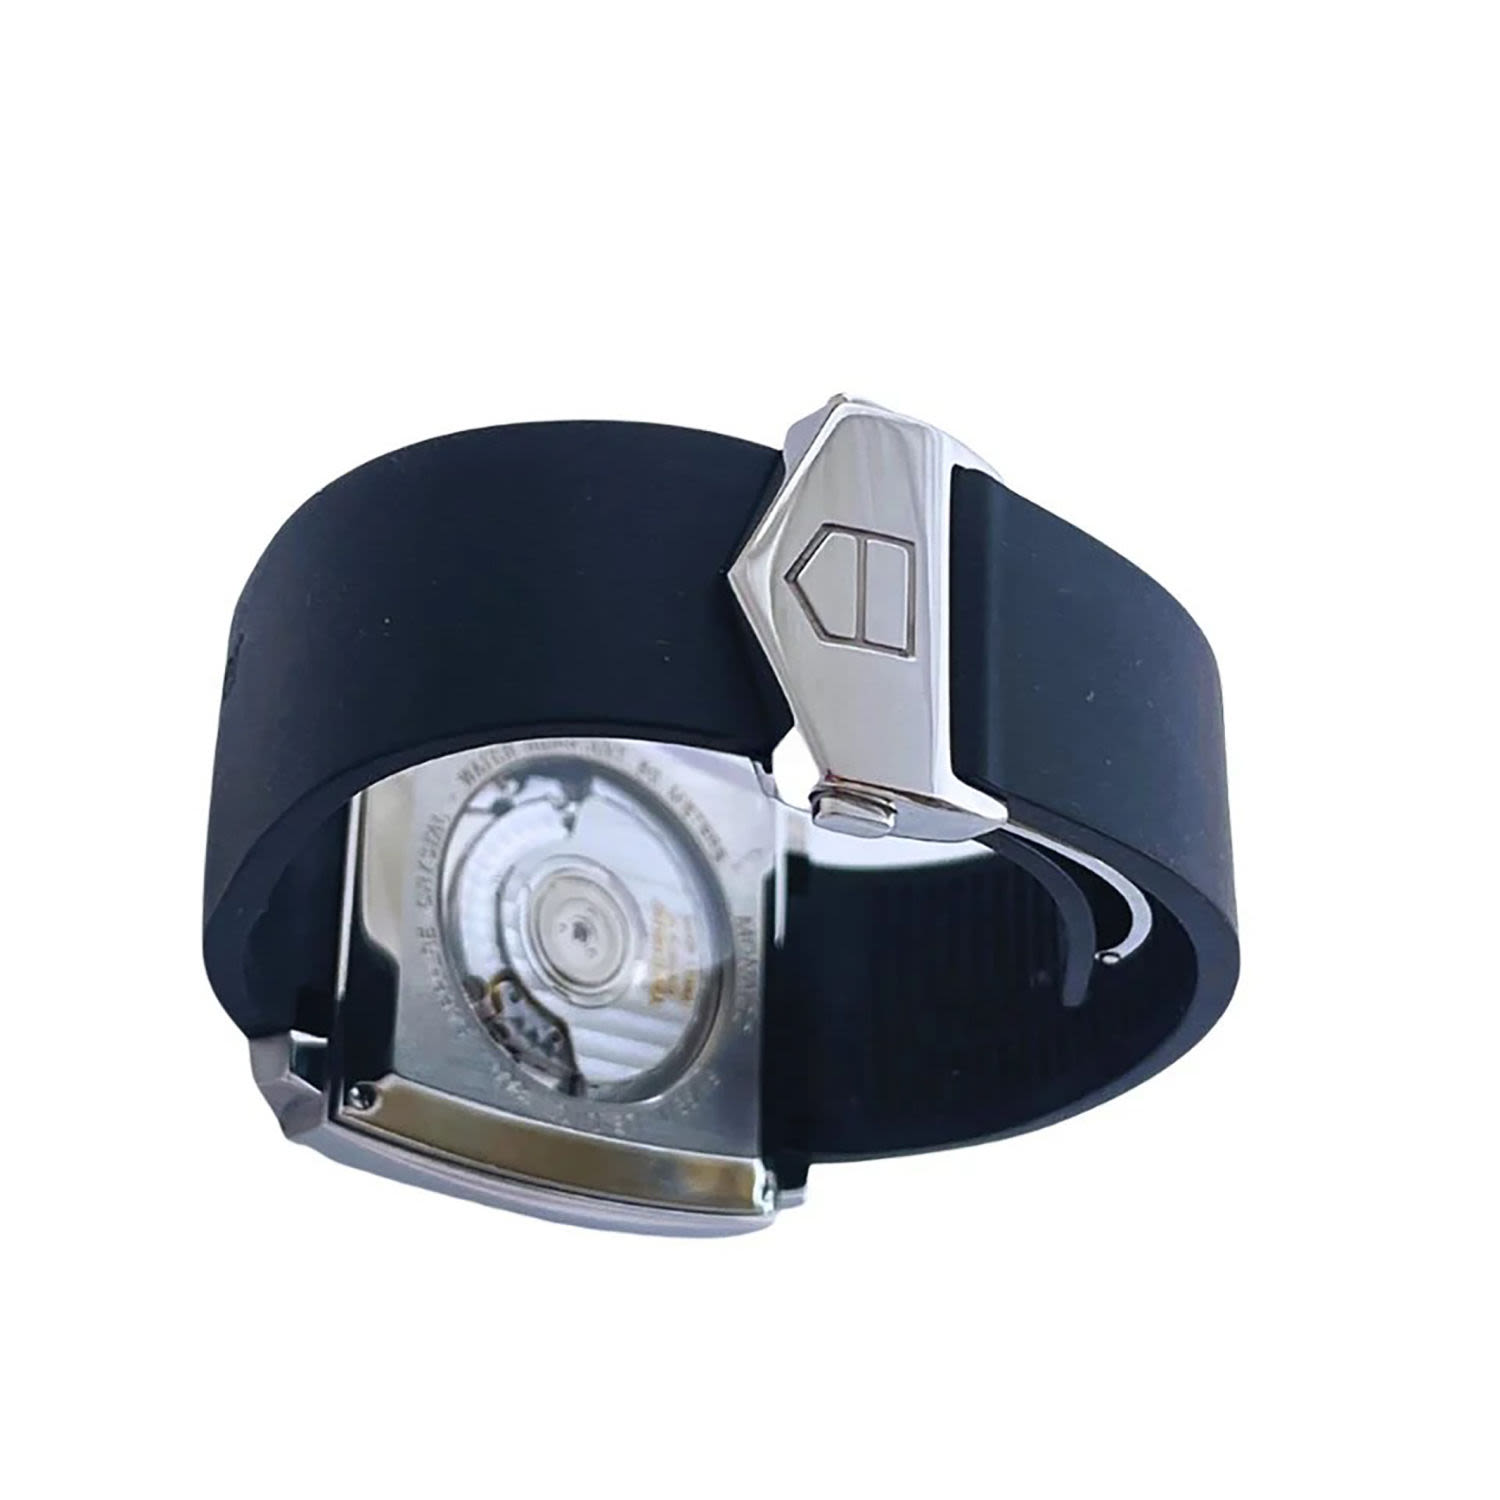 Tag Heuer Monaco Deep Blue model wristwatch in steel, for men, year 2007 - Image 5 of 7